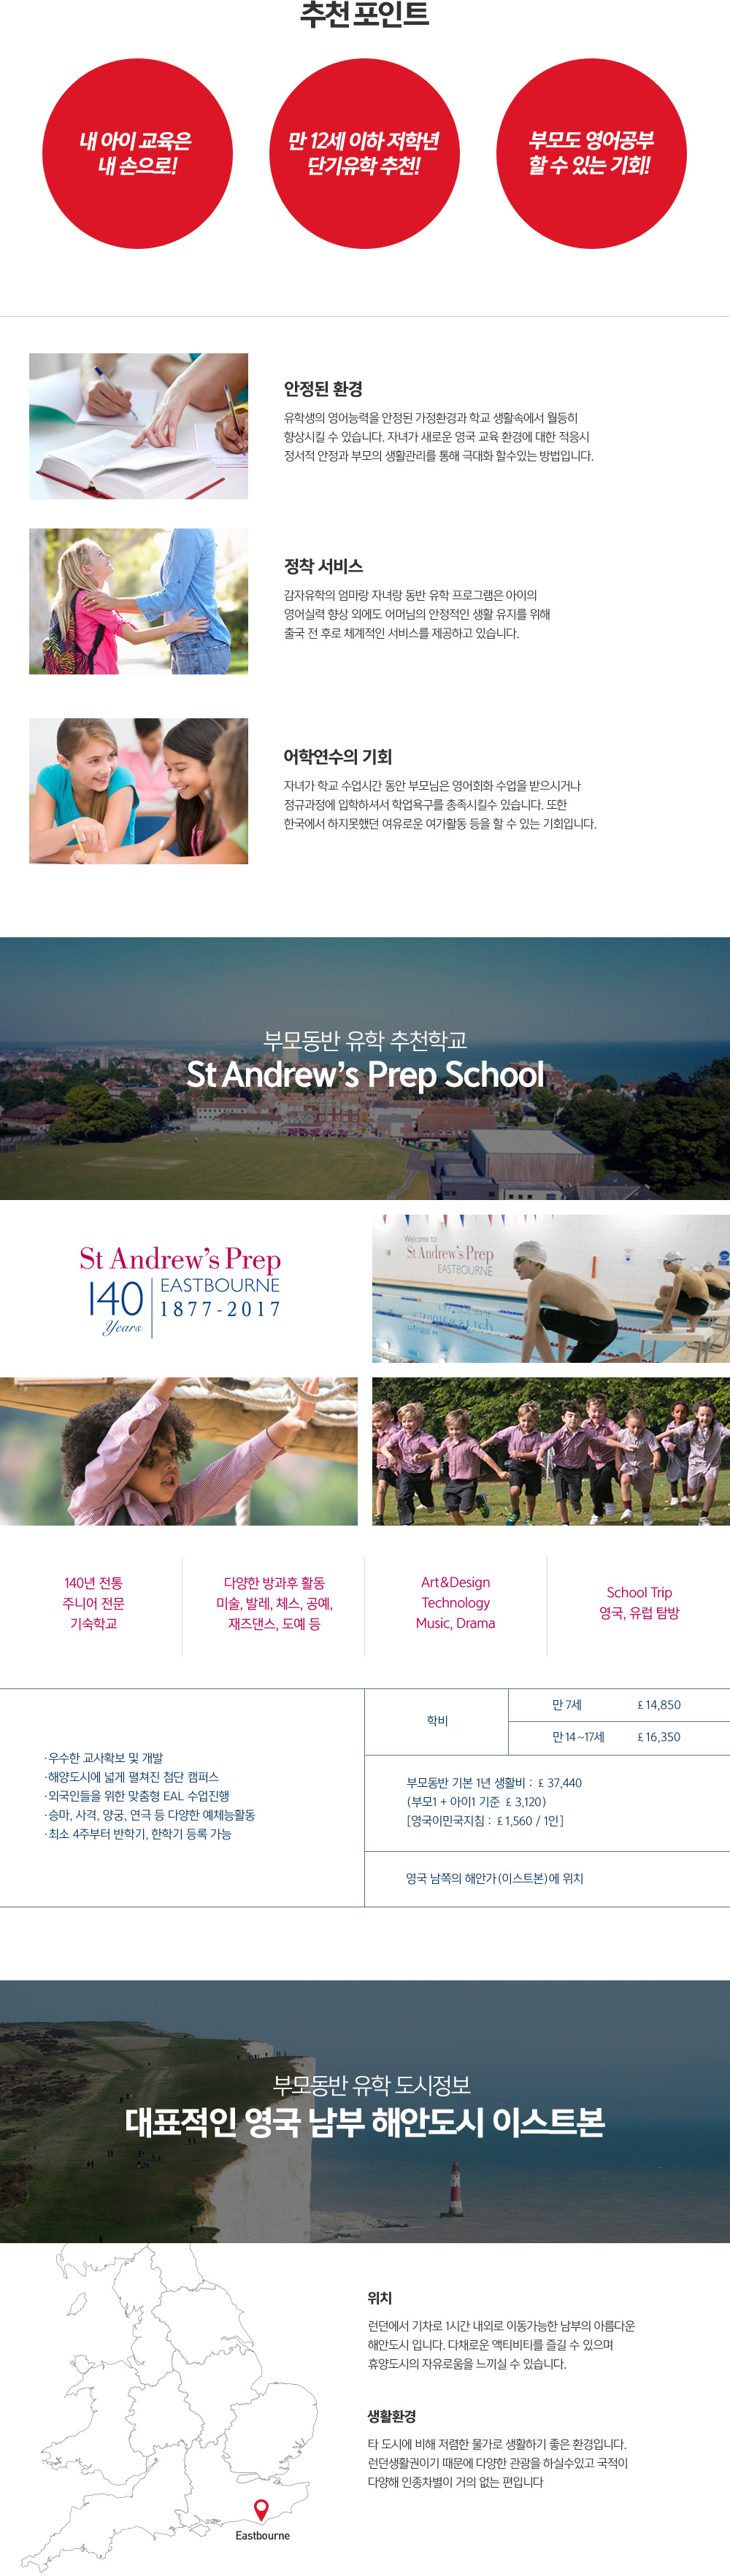 ���� ���߰����� �θ𵿹�����, ������ ȯ��, ���� ����, ���п����� ��ȸ, St Andrew's Prep School, ��ǥ���� ���� ���� �ؾȵ��� �̽�Ʈ��